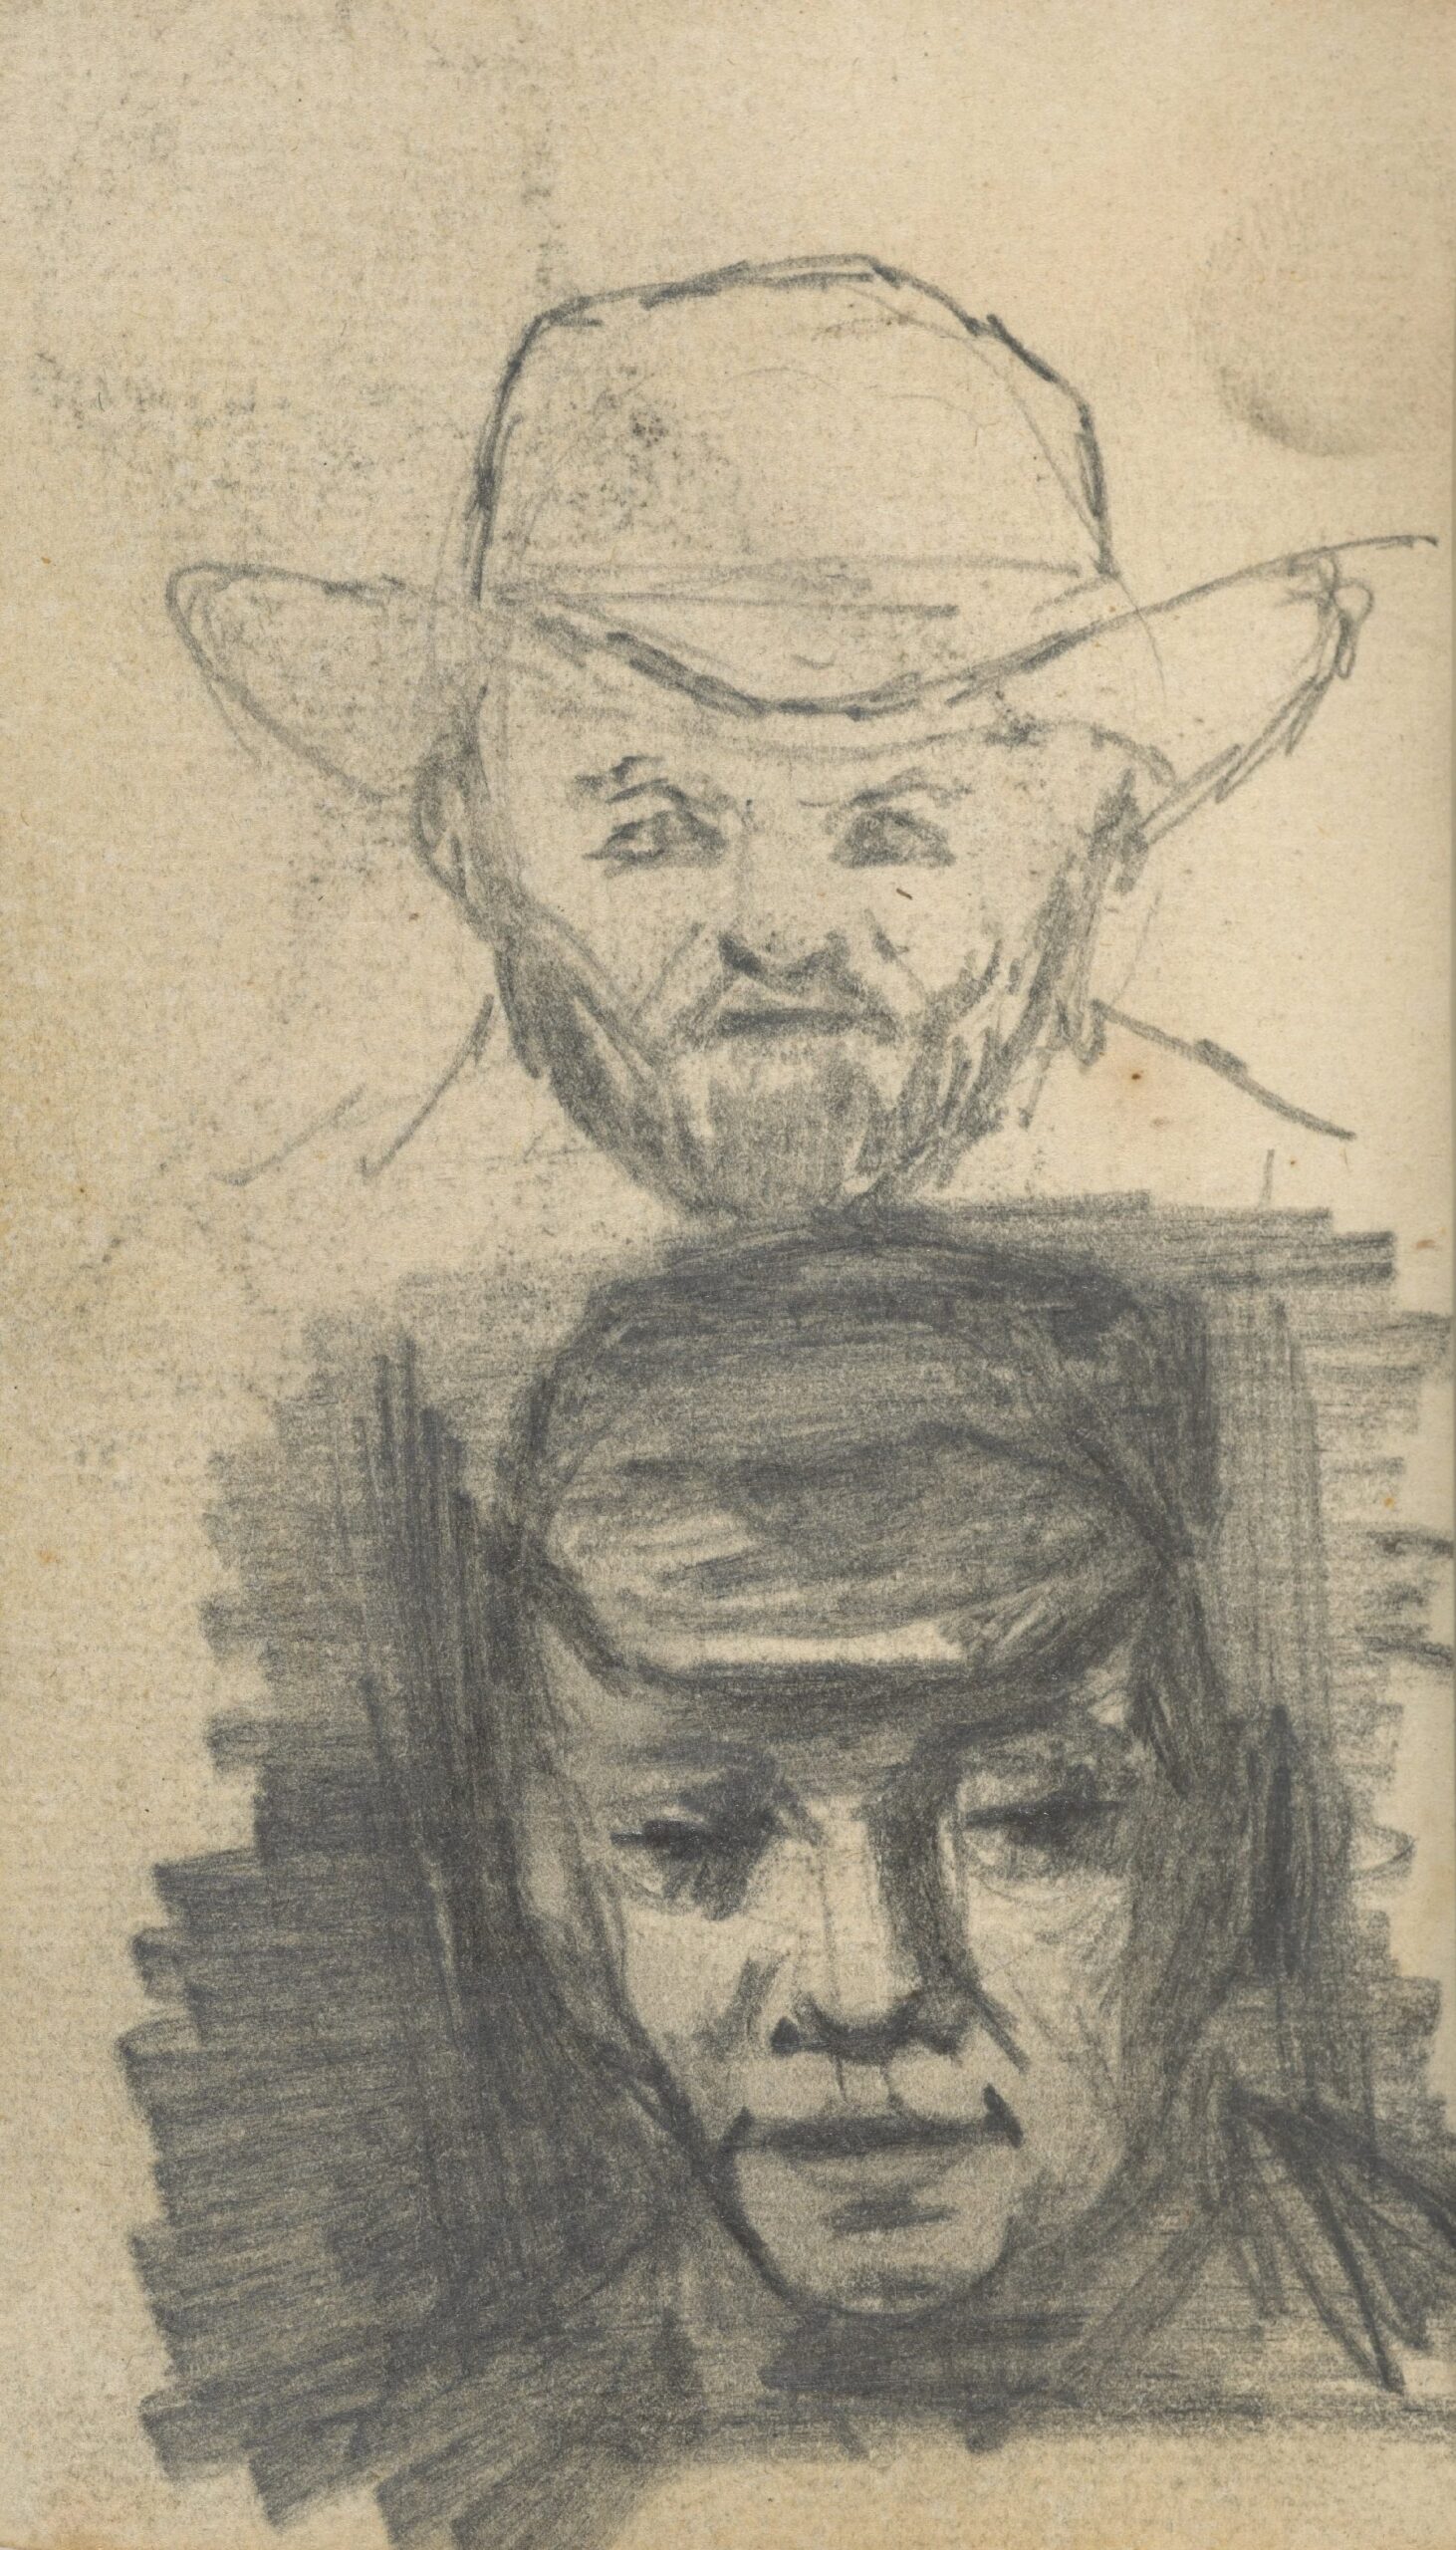 Twee mannenkoppen Vincent van Gogh (1853 - 1890), Nuenen, november 1884-september 1885